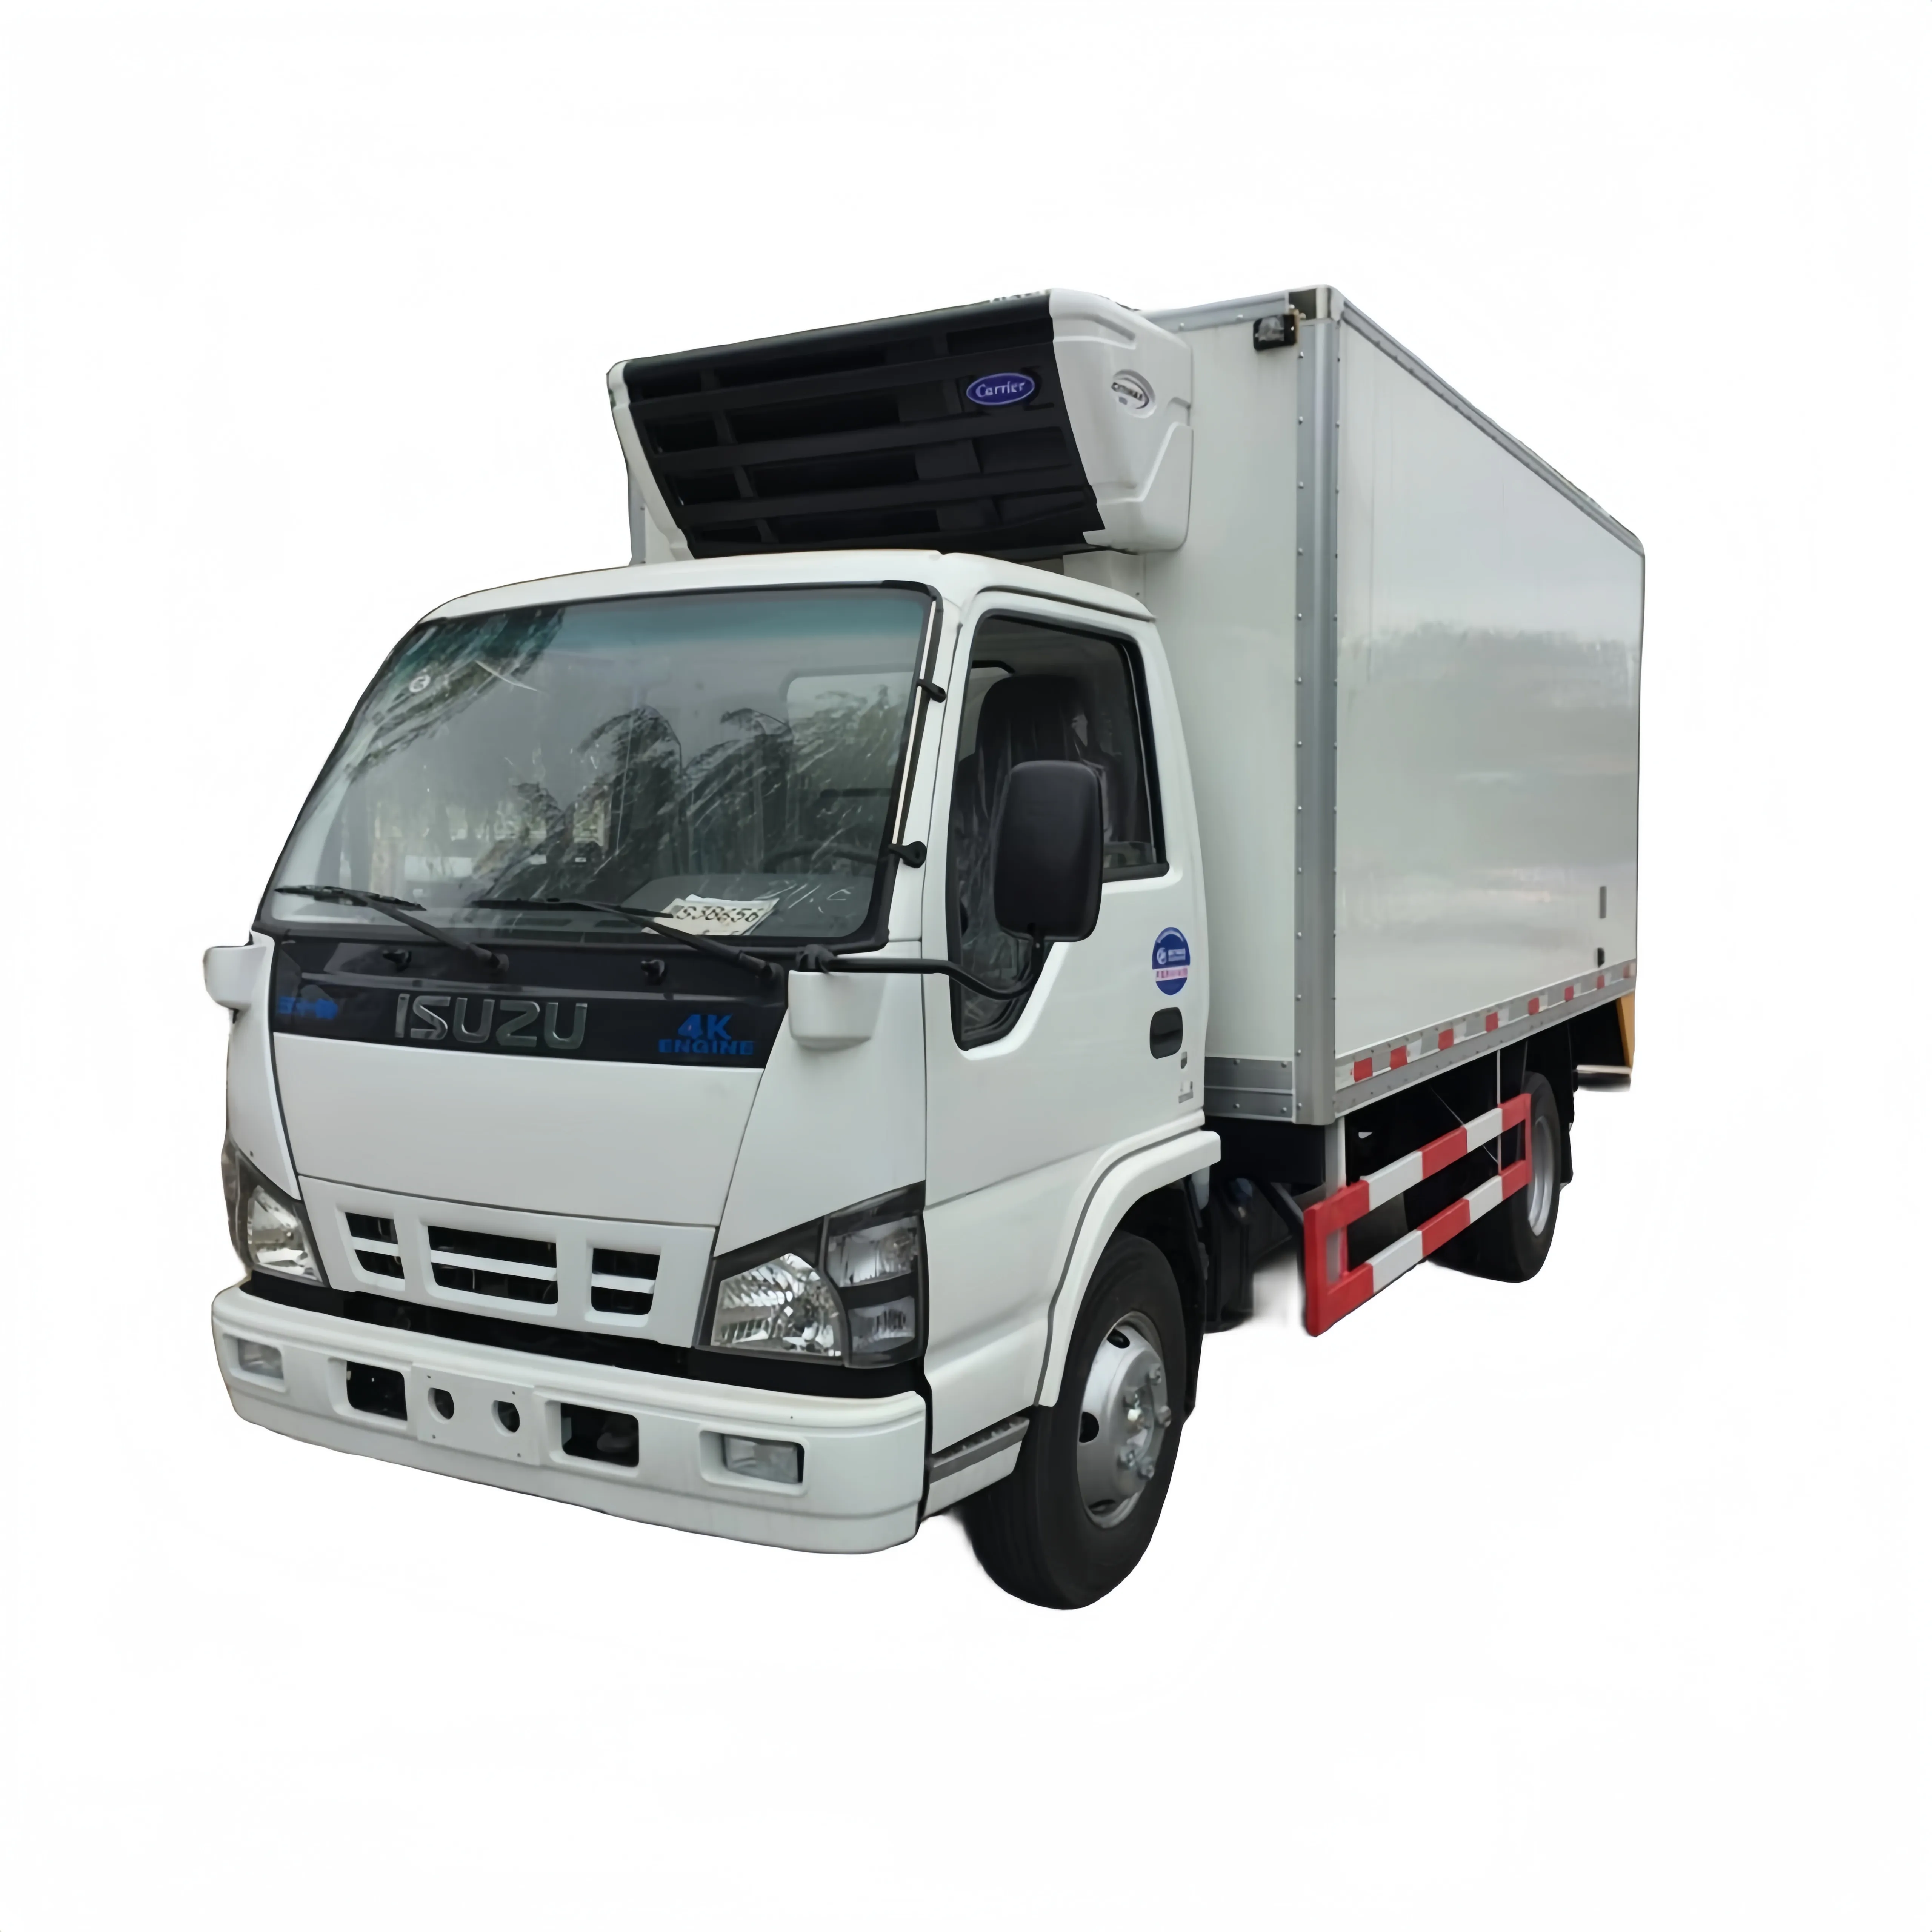 Nuovo e usato ISUZU 600P furgone refrigerato Mini camion refrigerato in vendita